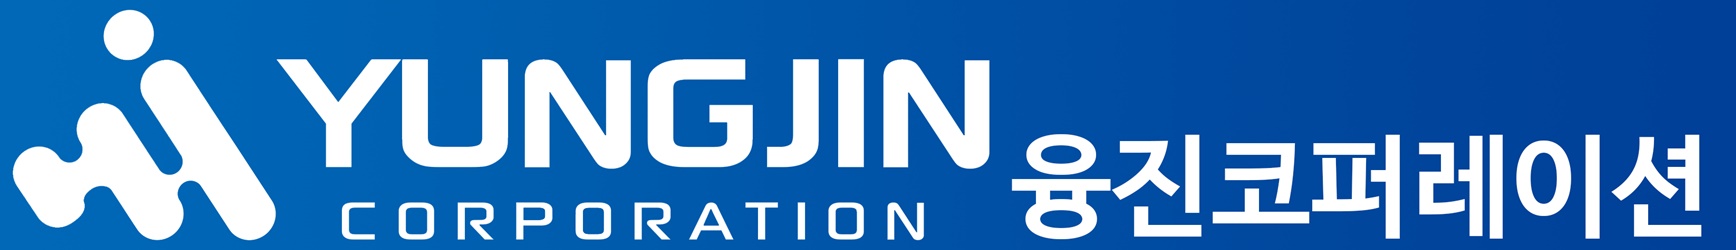 융진코퍼레이션 로고